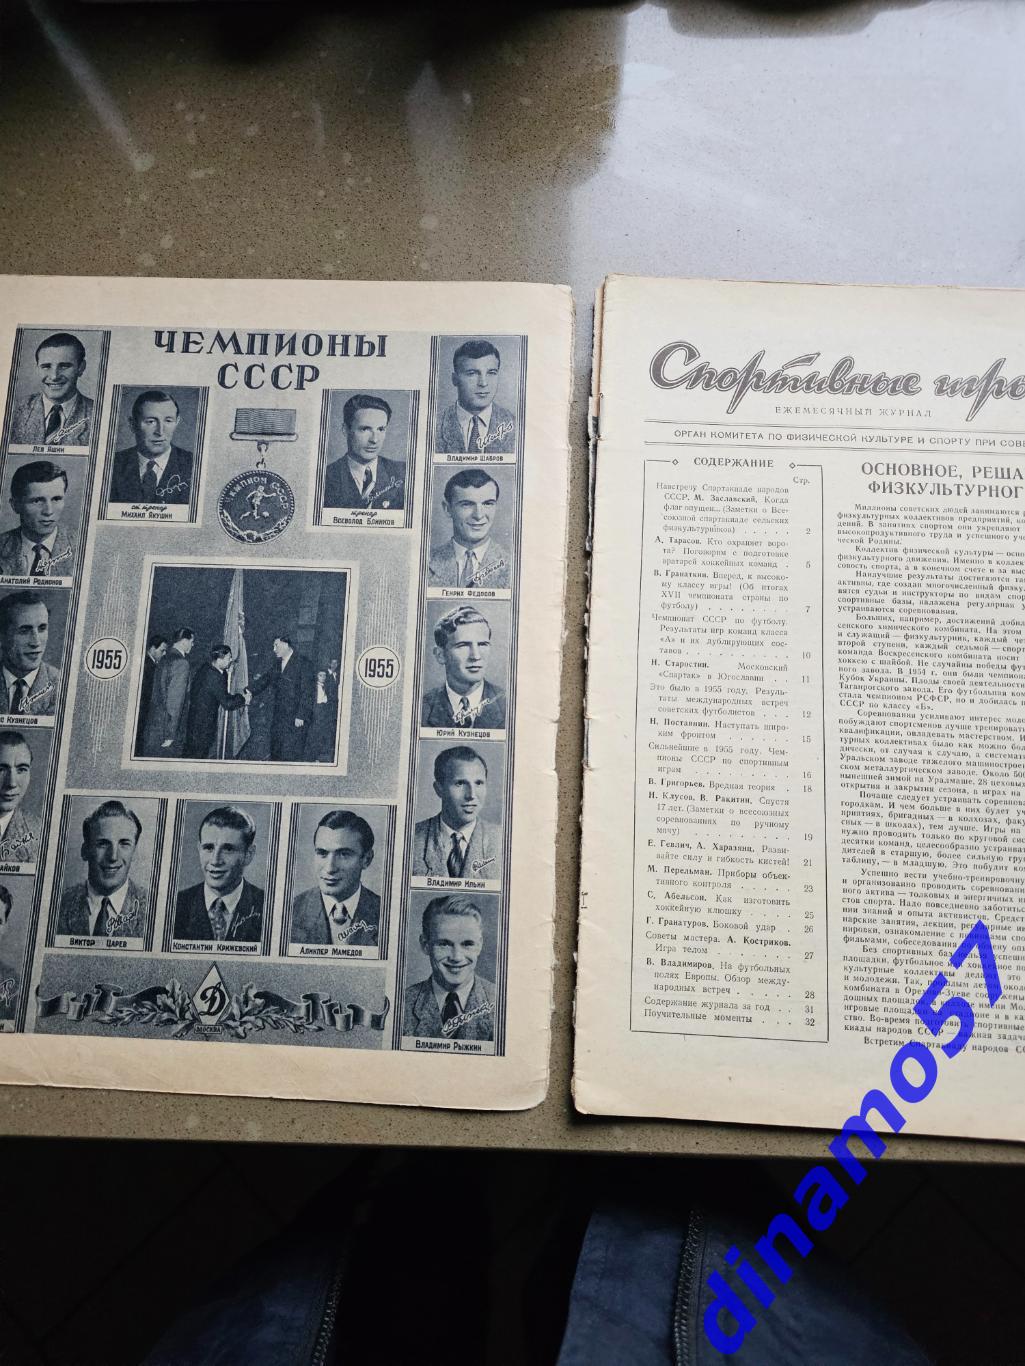 Журнал Спортивные игры№ 7 1955 3